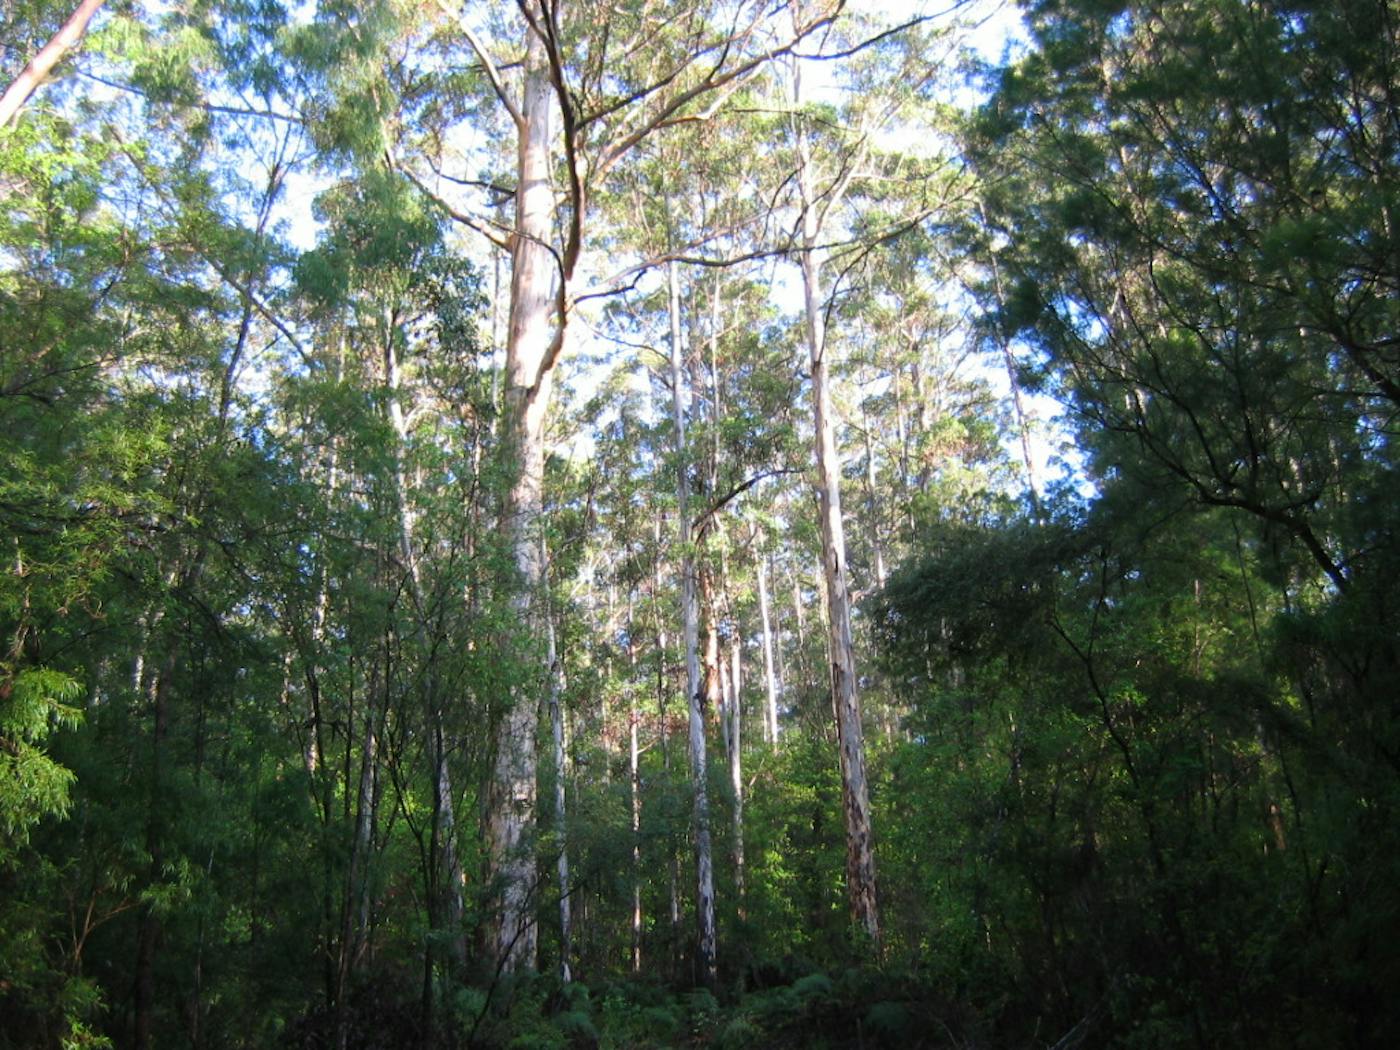 South Australian Mediterranean Forests, Woodlands & Scrub (AU5)